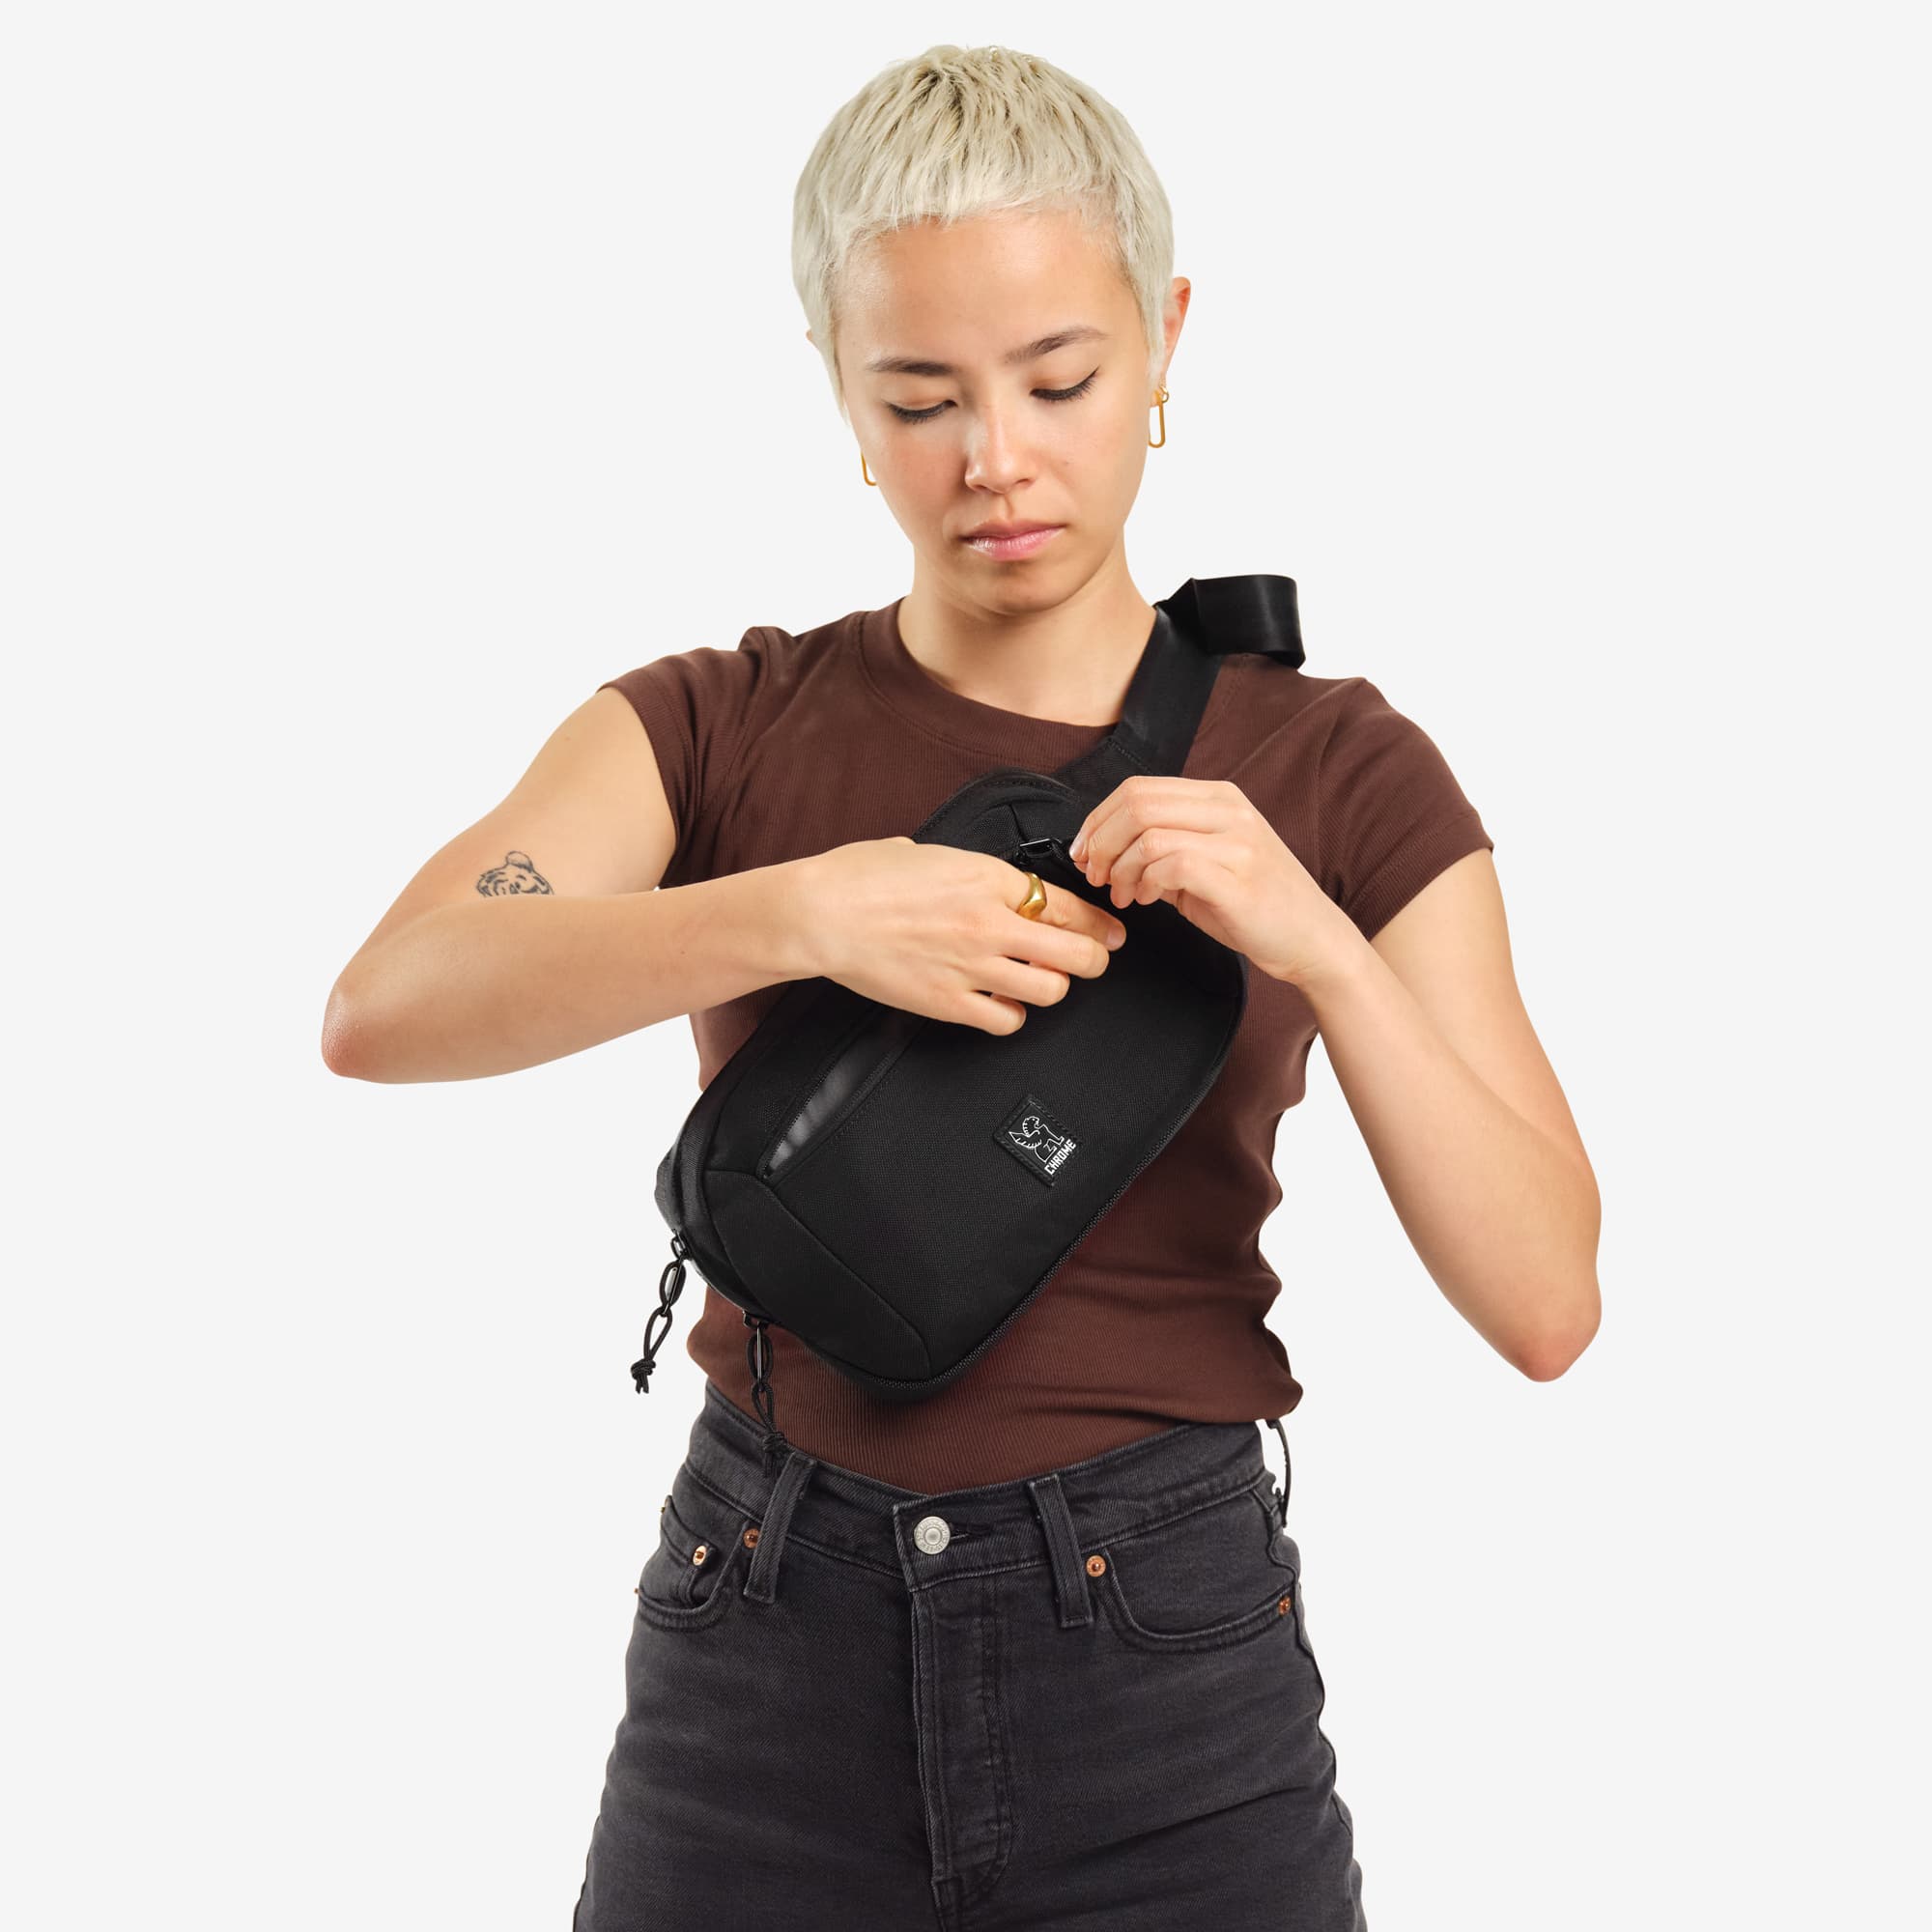 Ziptop Waistpack sling in black woman unzipping it